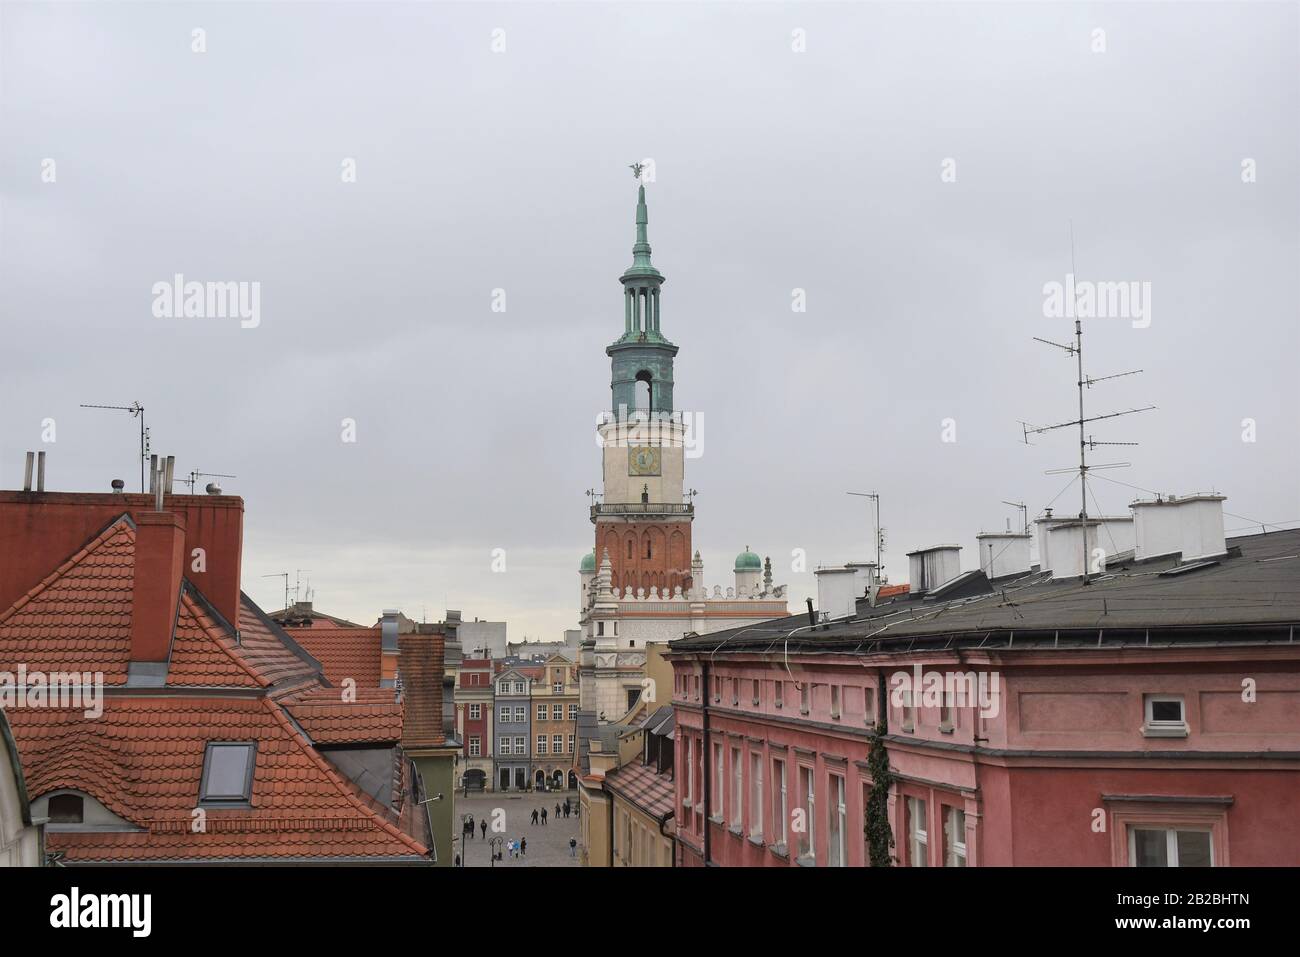 Polish city, Poznan, greater poland Stock Photo